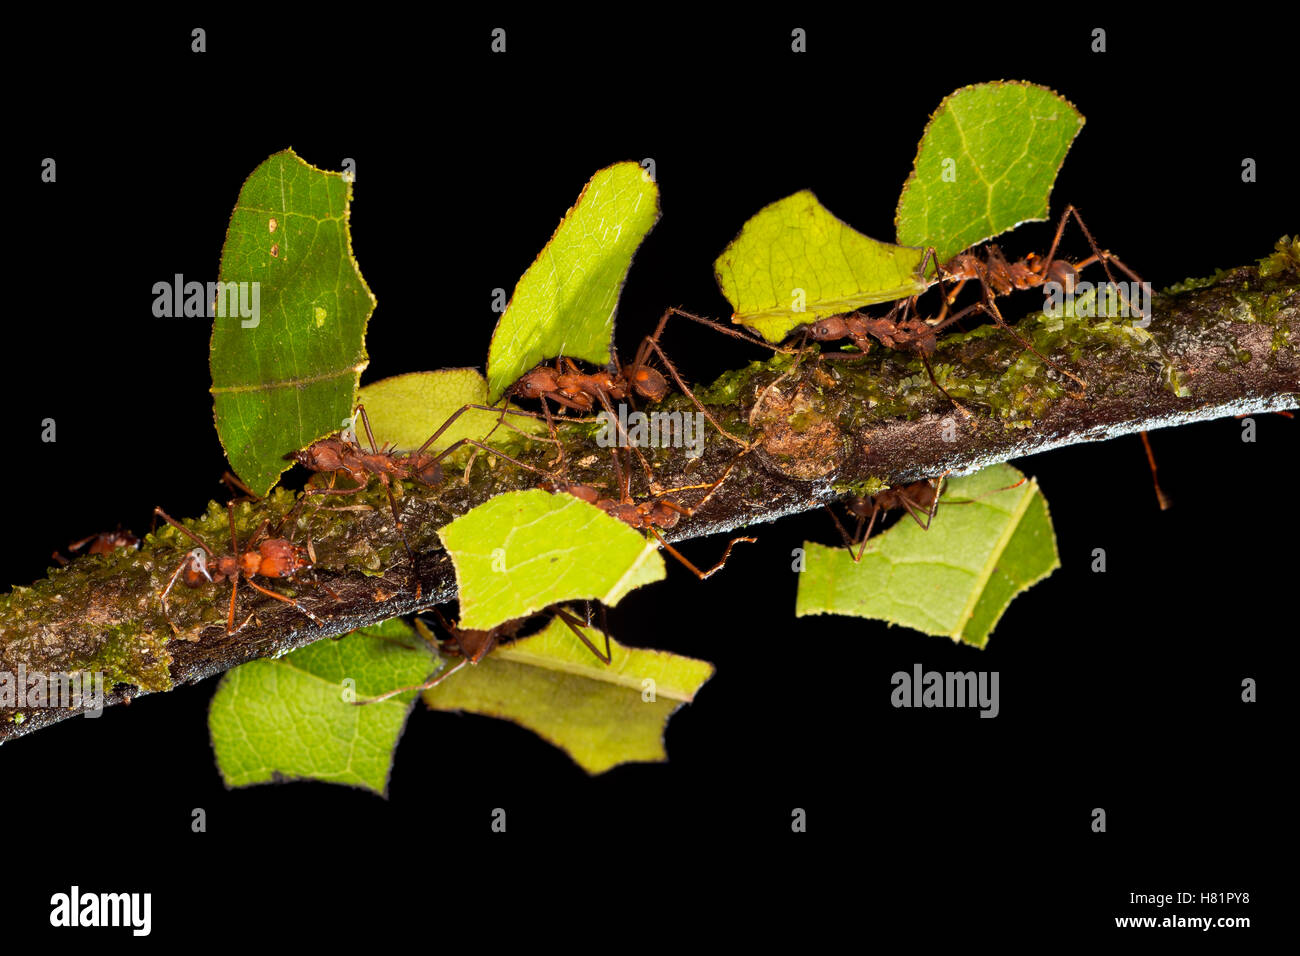 Leafcutter hormiga (Atta sp) grupo llevar secciones de hojas, que se usan para cultivar hongos nutritivos, Costa Rica Foto de stock